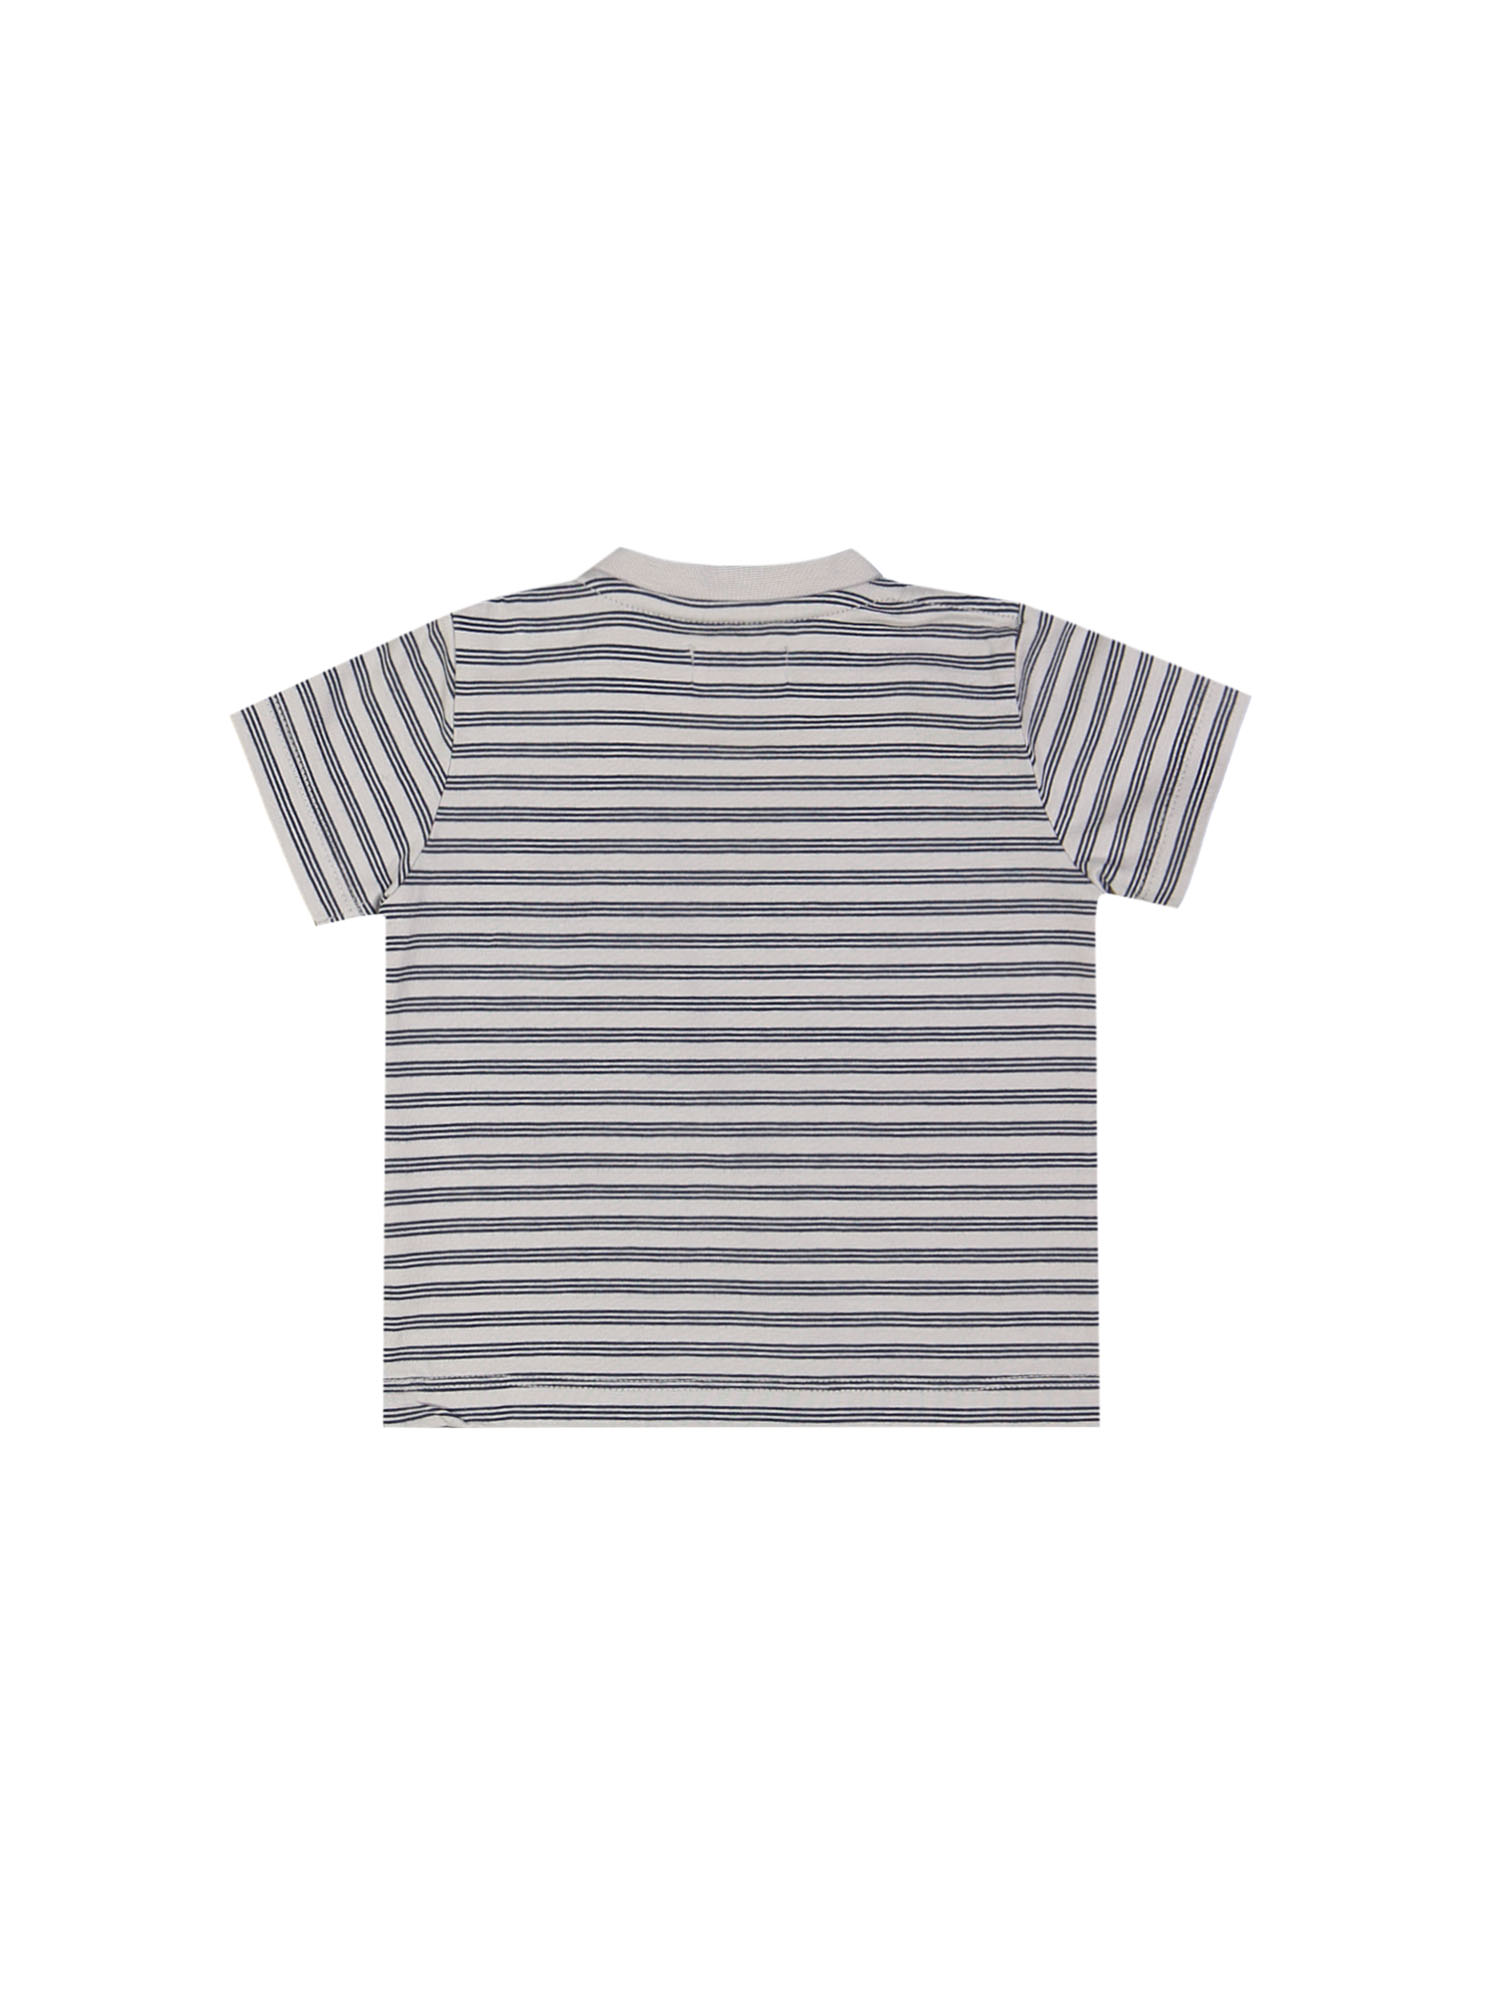 T-shirt mini ghostdog striped blauwgrijs 09m